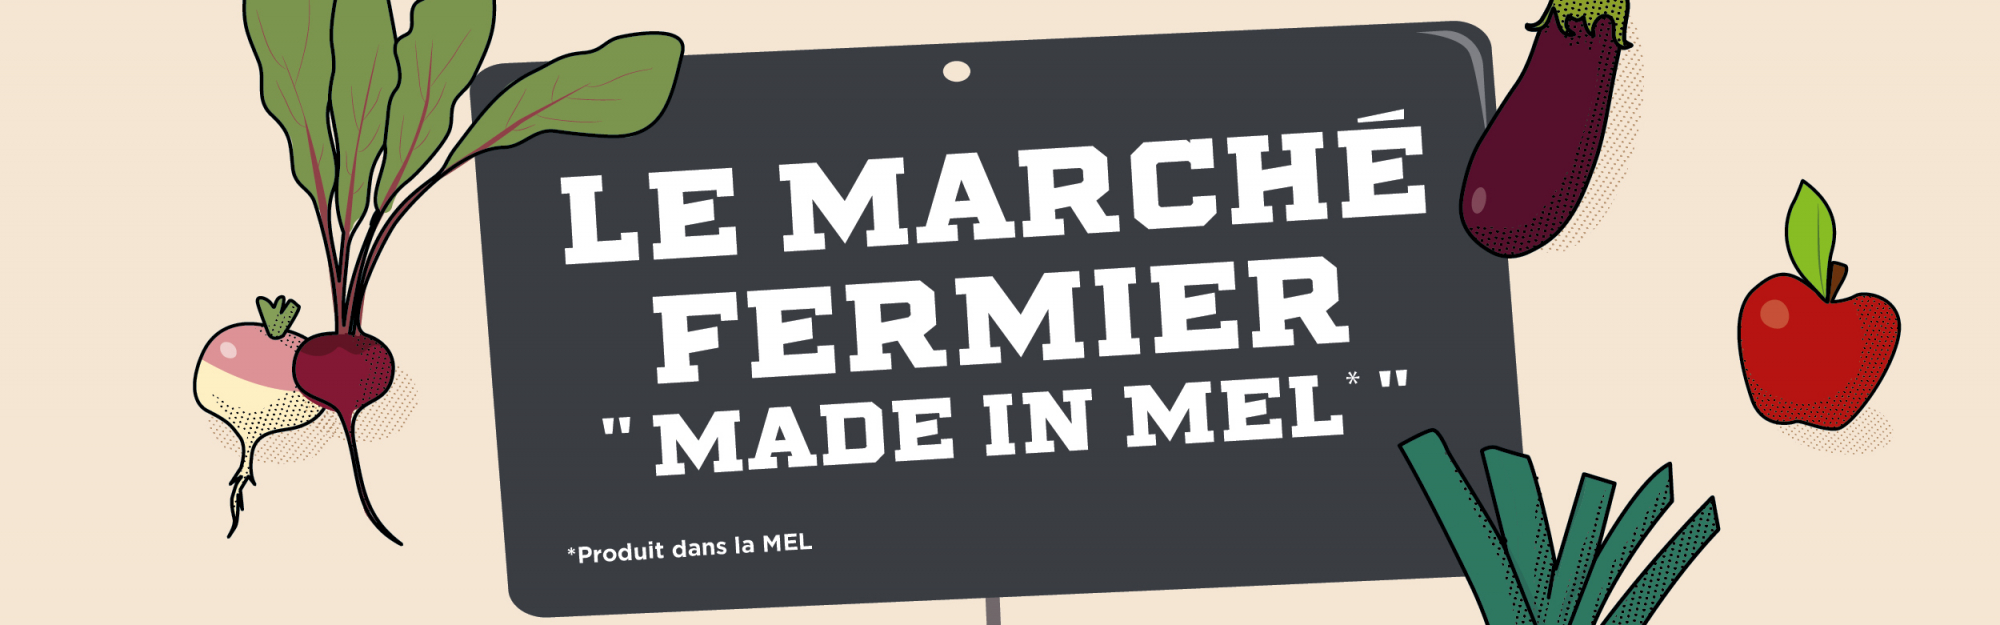 3è édition du Marché Fermier « Made in MEL » : Dimanche 6 septembre, la Métropole Européenne de Lille met à l’honneur les producteurs et artisans locaux